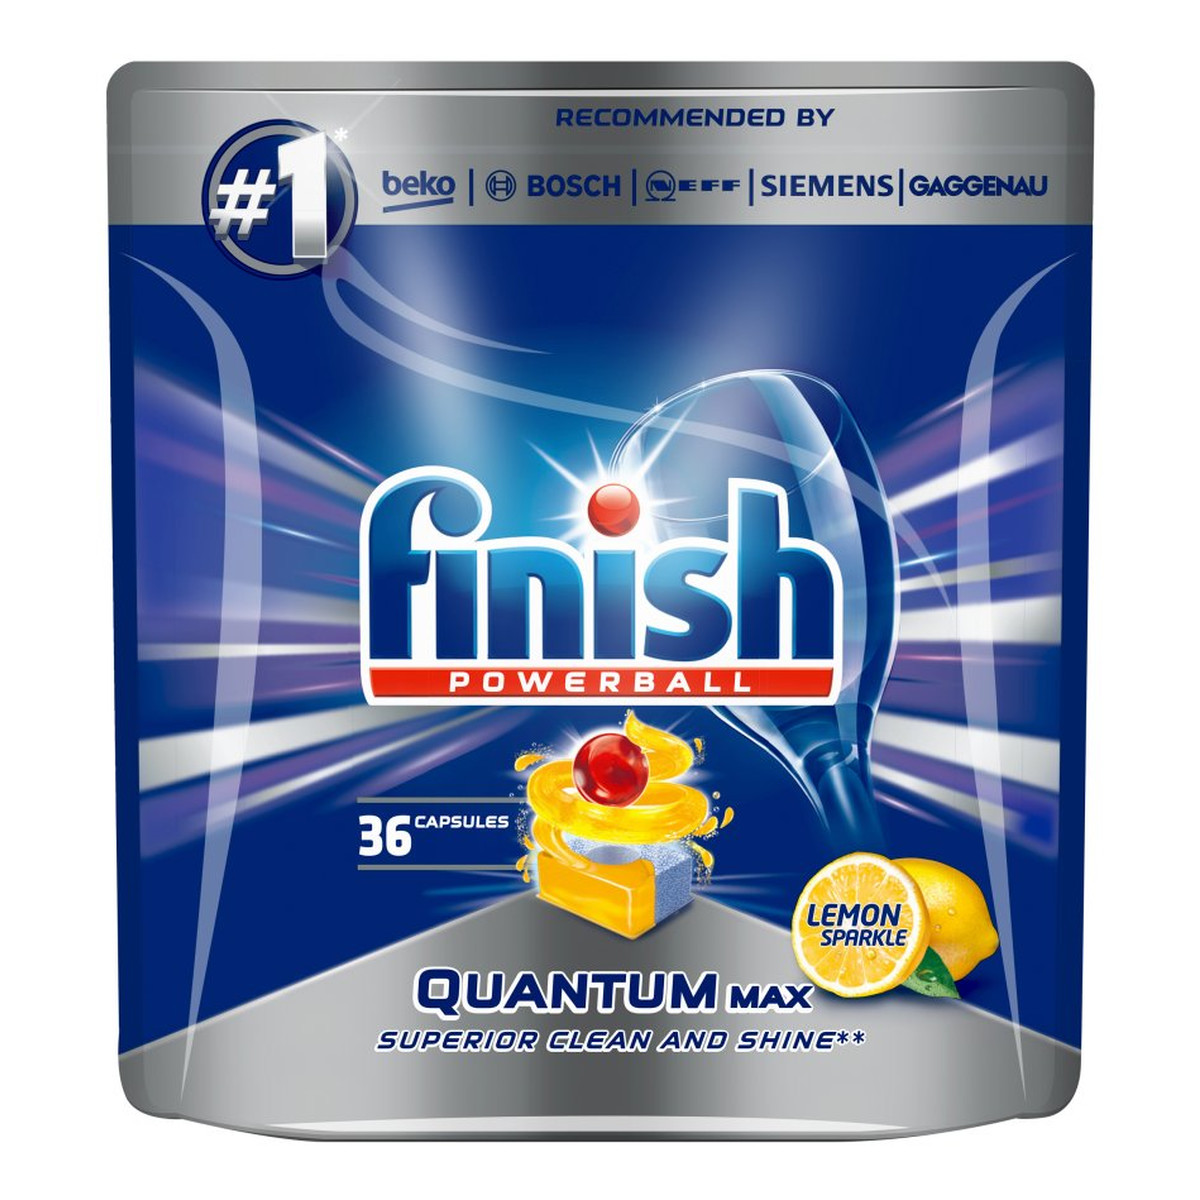 Finish Powerball Quantum Max tabletki do mycia naczyń w zmywarkach Lemon Sparkle 36szt